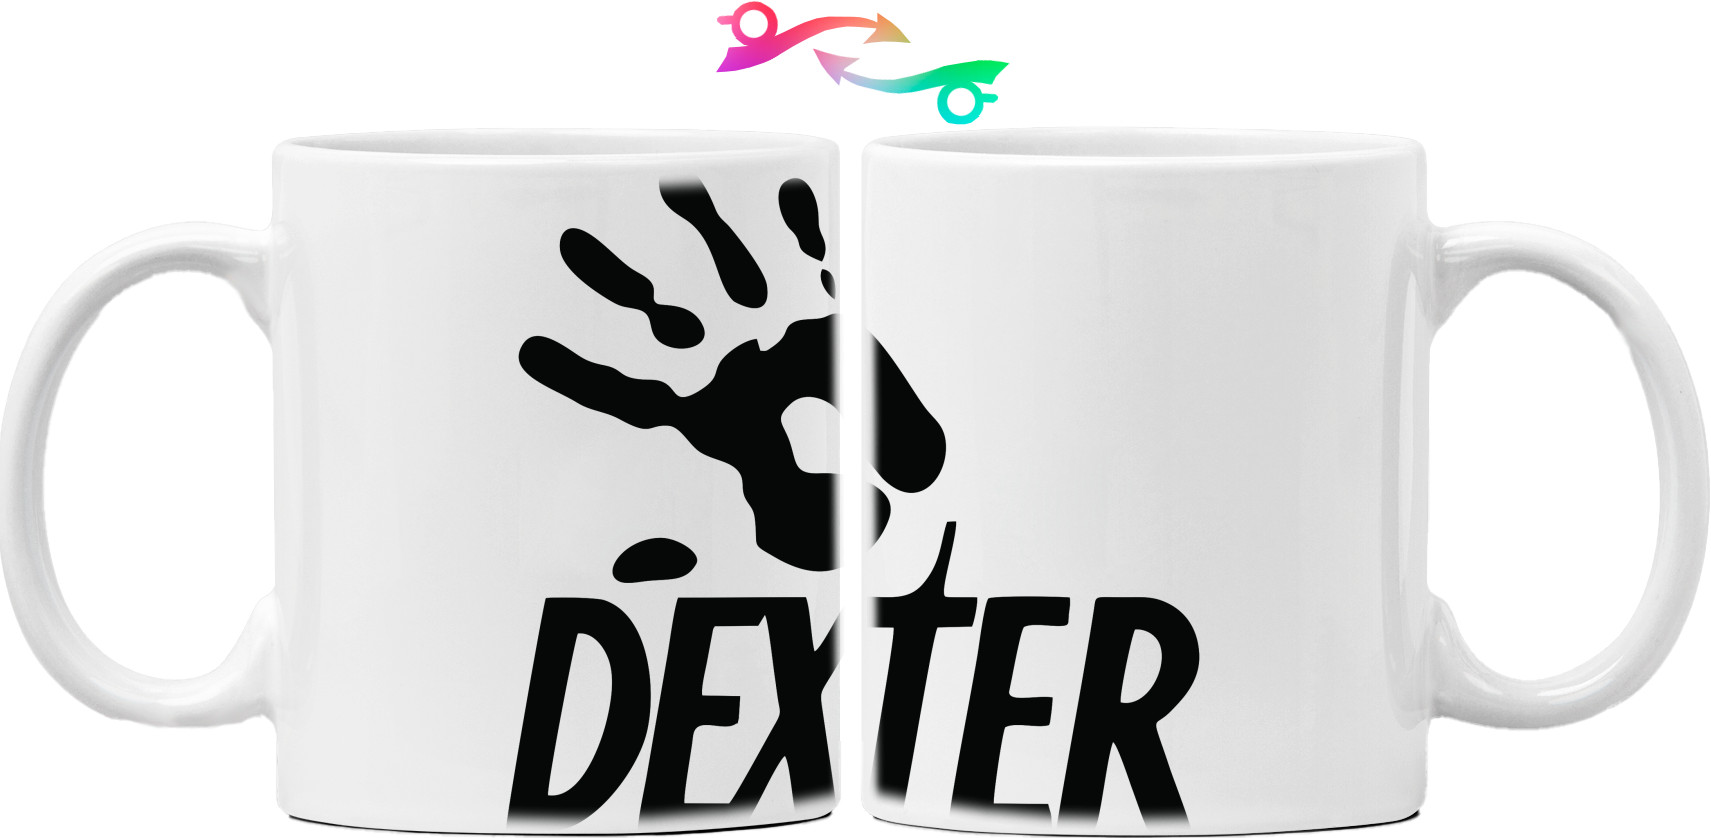 Dexster 4